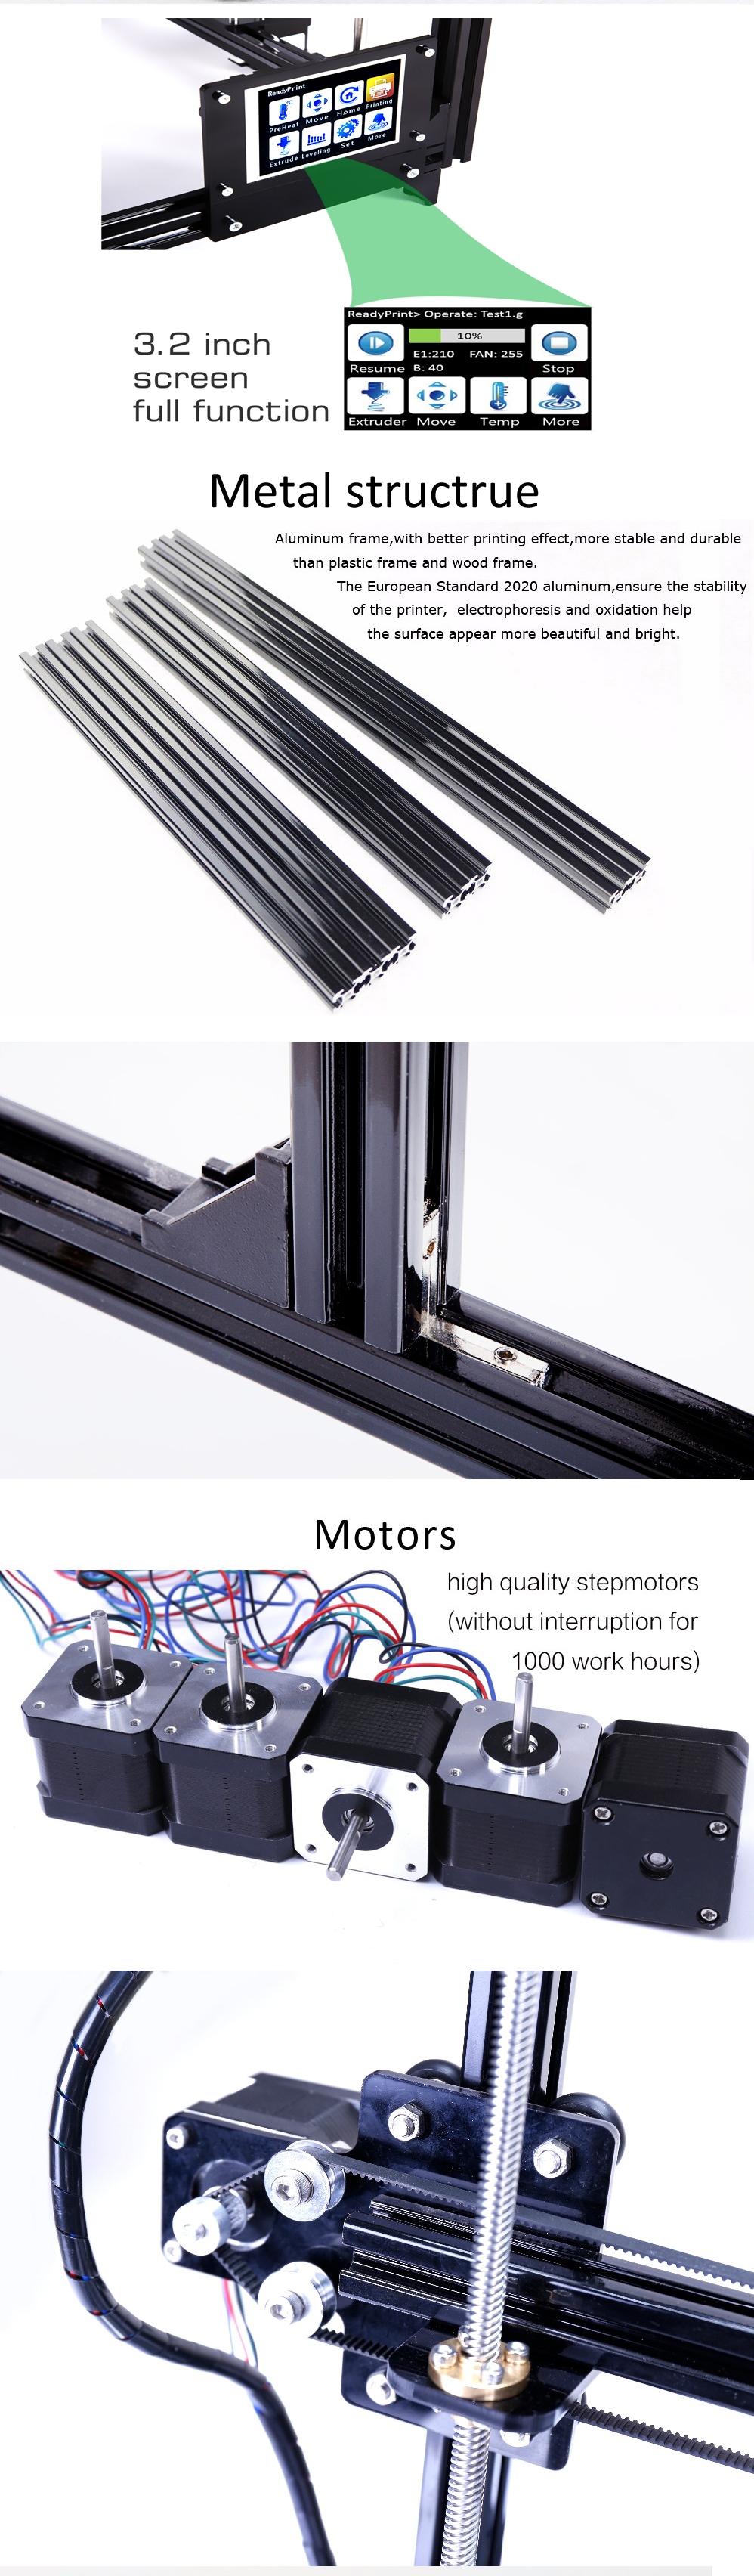 FLSUN® C Plus Desktop DIY 3D Printer With Touch Screen Dual Nozzle Auto Leveling Double Z-motors Support Flexible Filament 300*300*420mm Printing Size 5